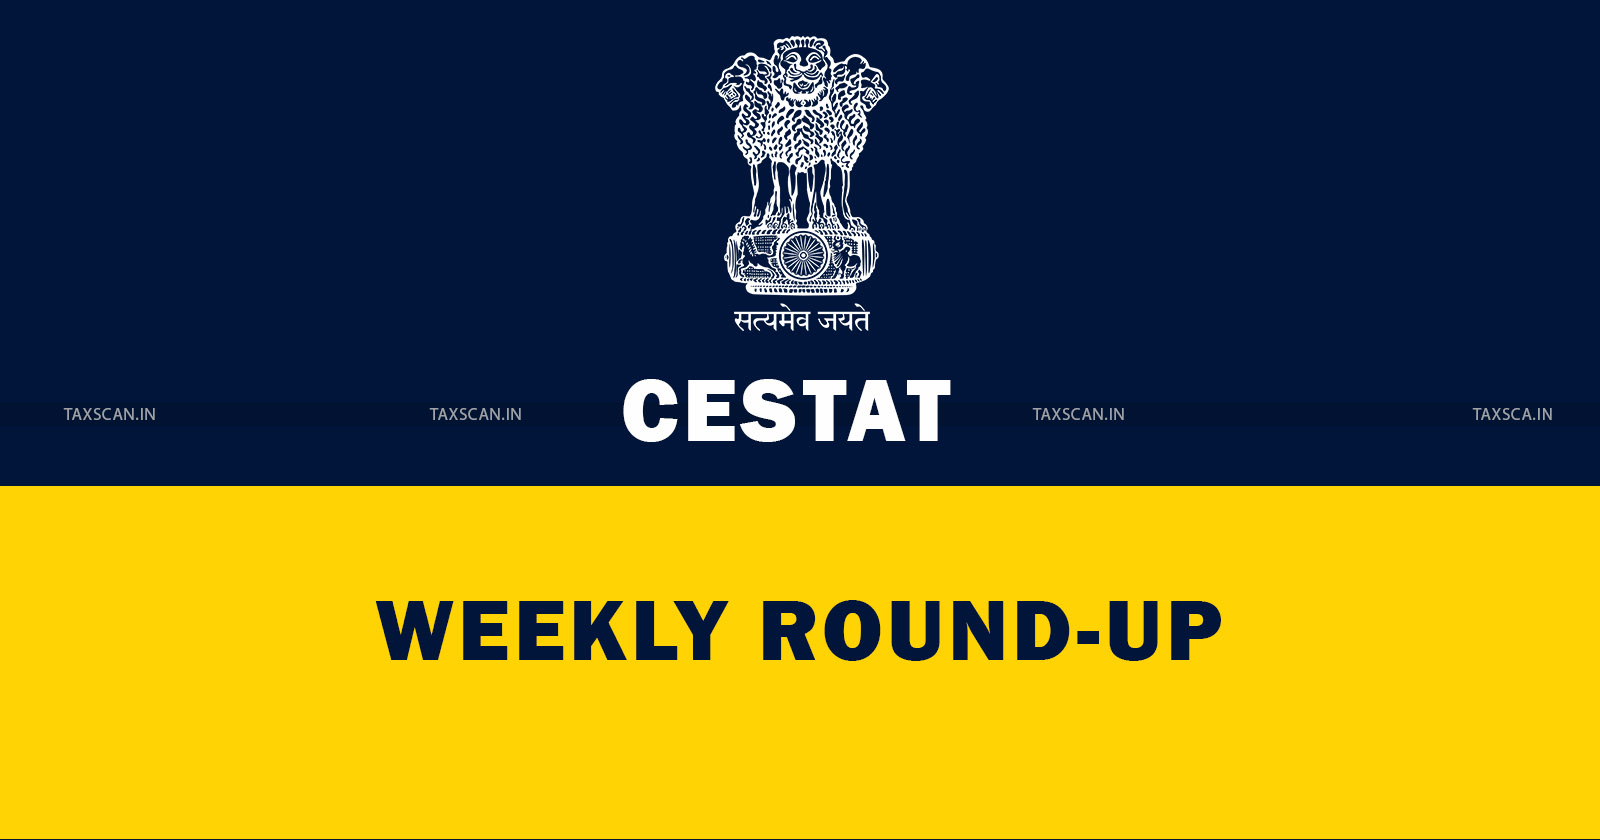 CESTAT Weekly Round Up - CESTAT - Weekly Round Up - taxscan